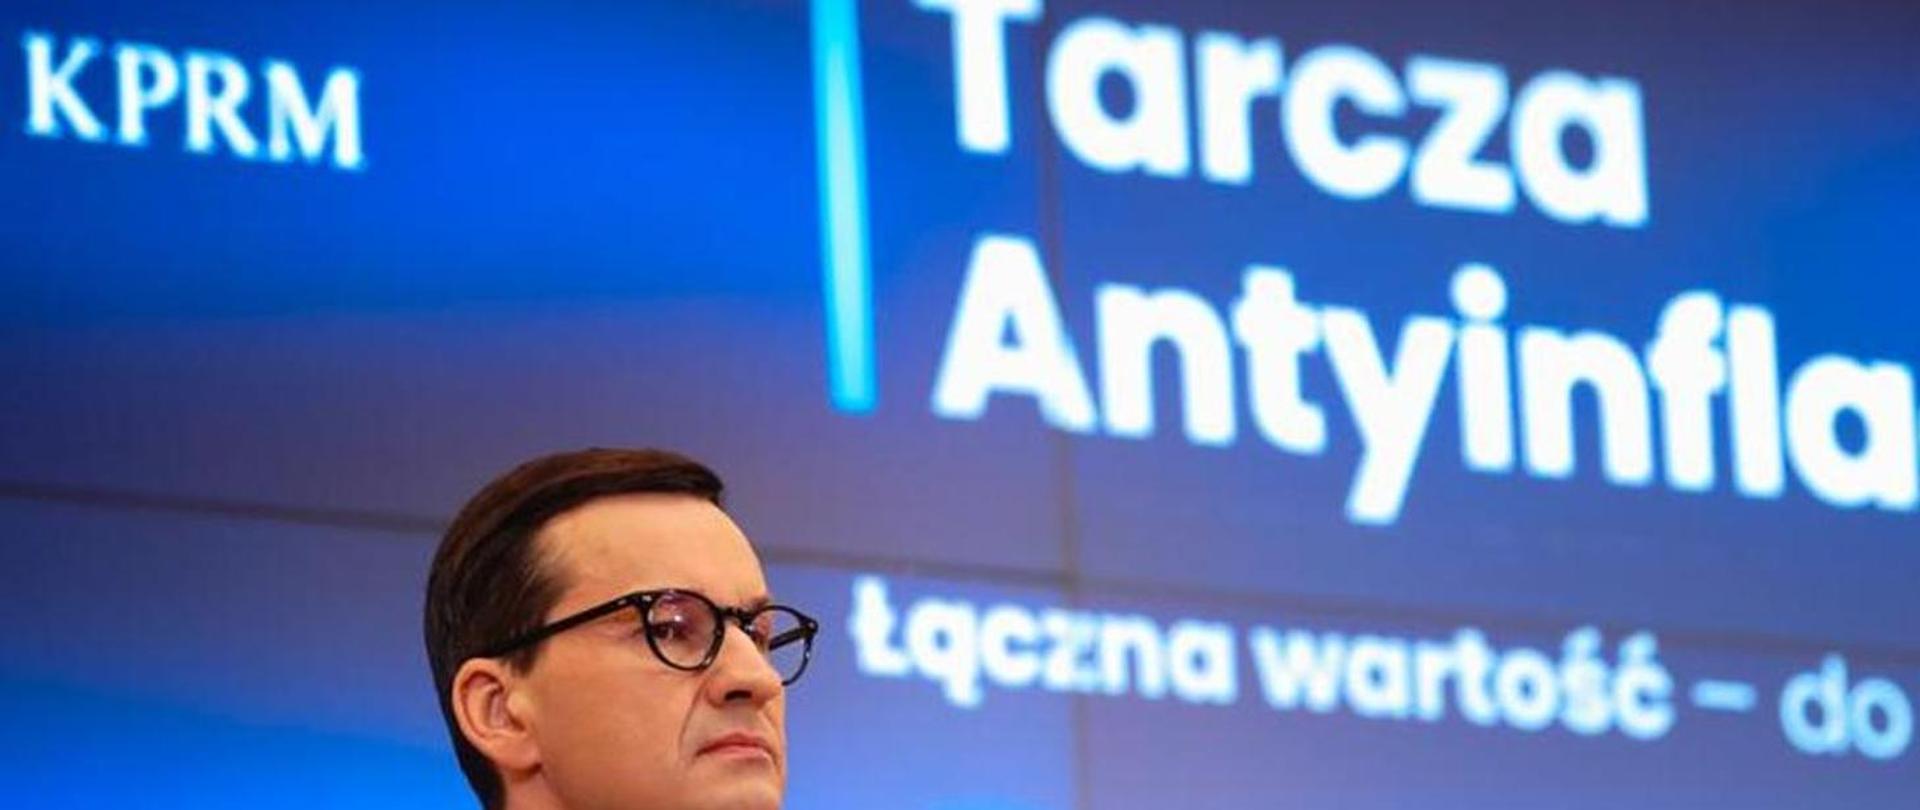 Rząd złagodzi skutki inflacji dla Polaków w ramach tzw. tarczy antyinflacyjnej